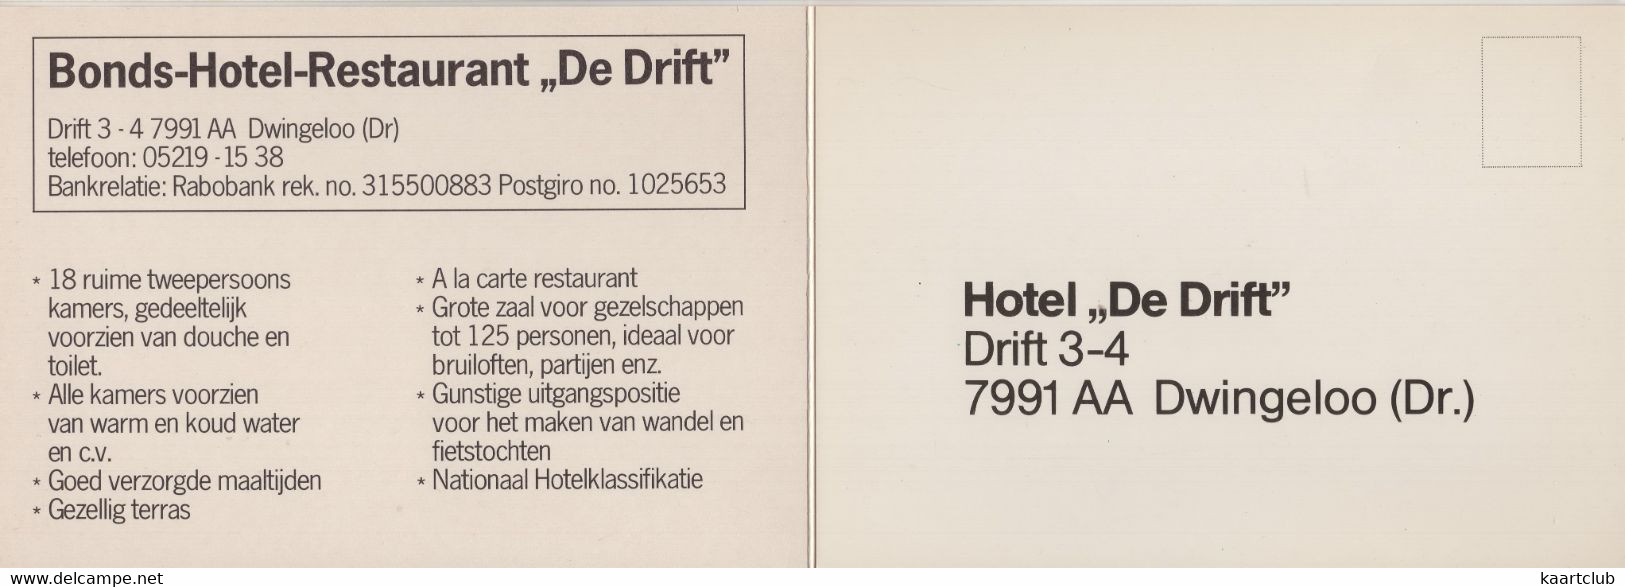 Dwingeloo - Bonds-Hotel 'De Drift', Drift 3-4 : FORD CONSUL/GRANADA - (Drenthe) - 3x 15cm X 10.5cm - Dwingeloo